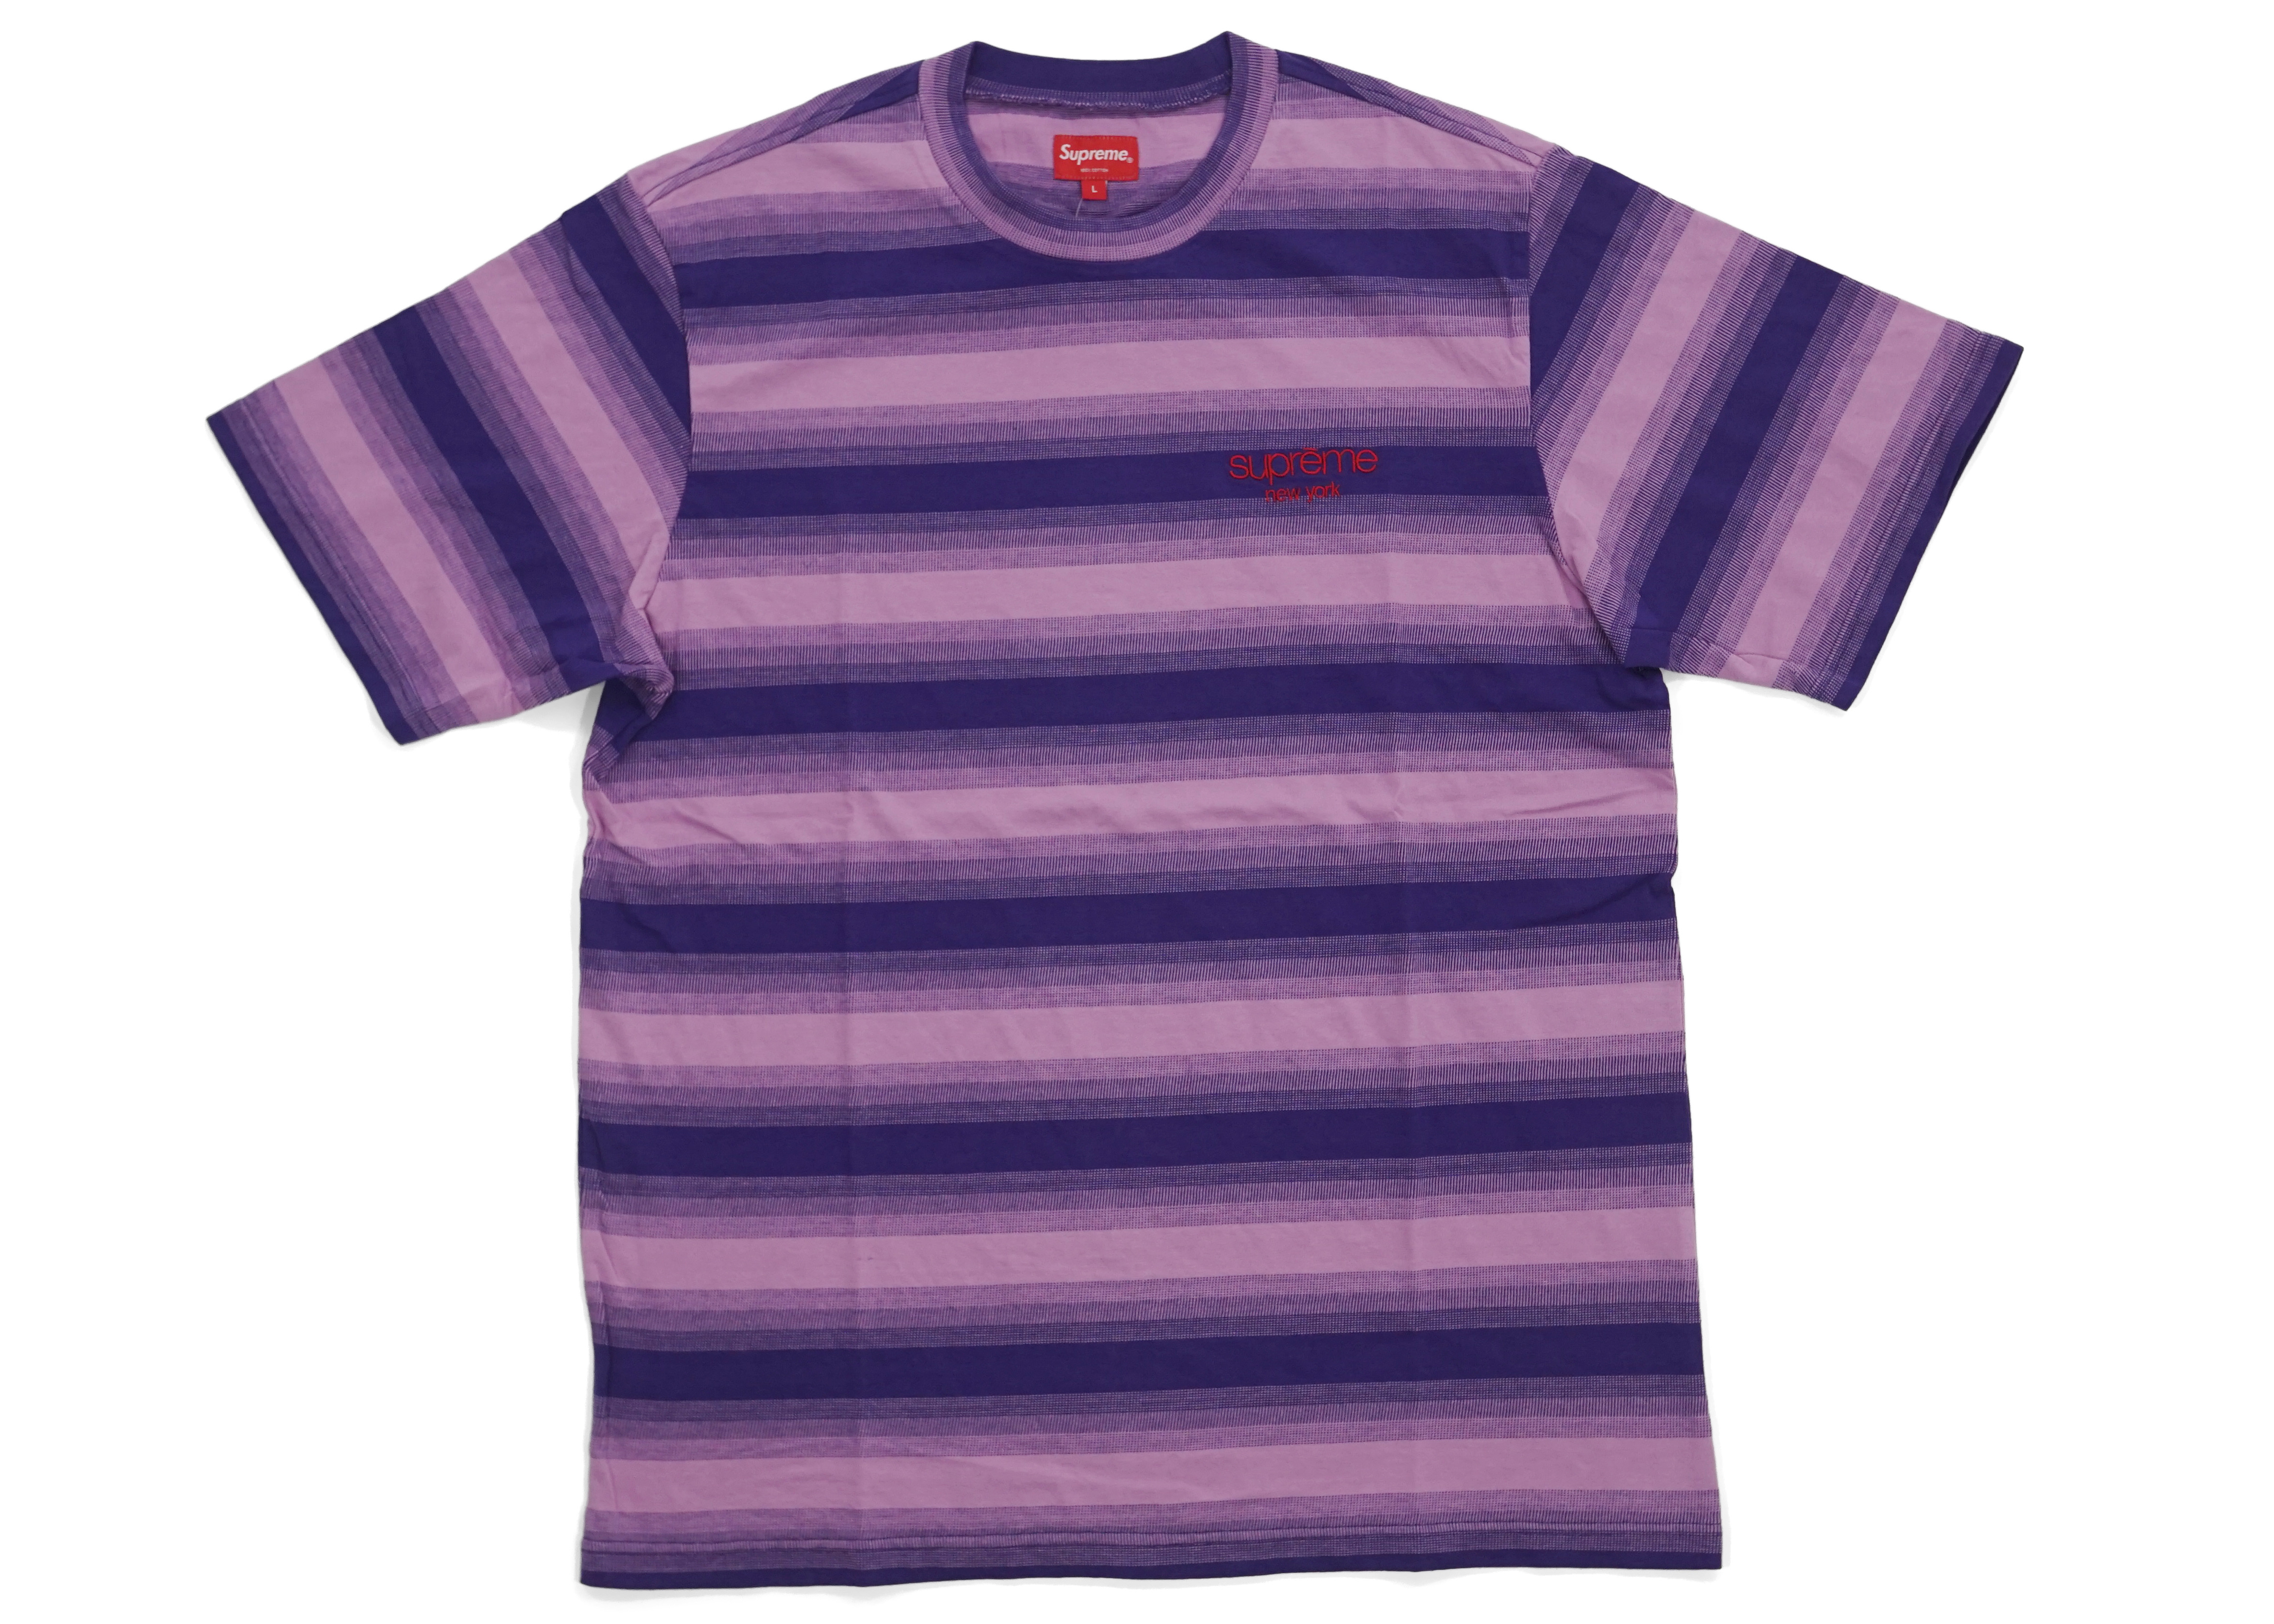 Supreme Gradient Striped S/S Top Purple